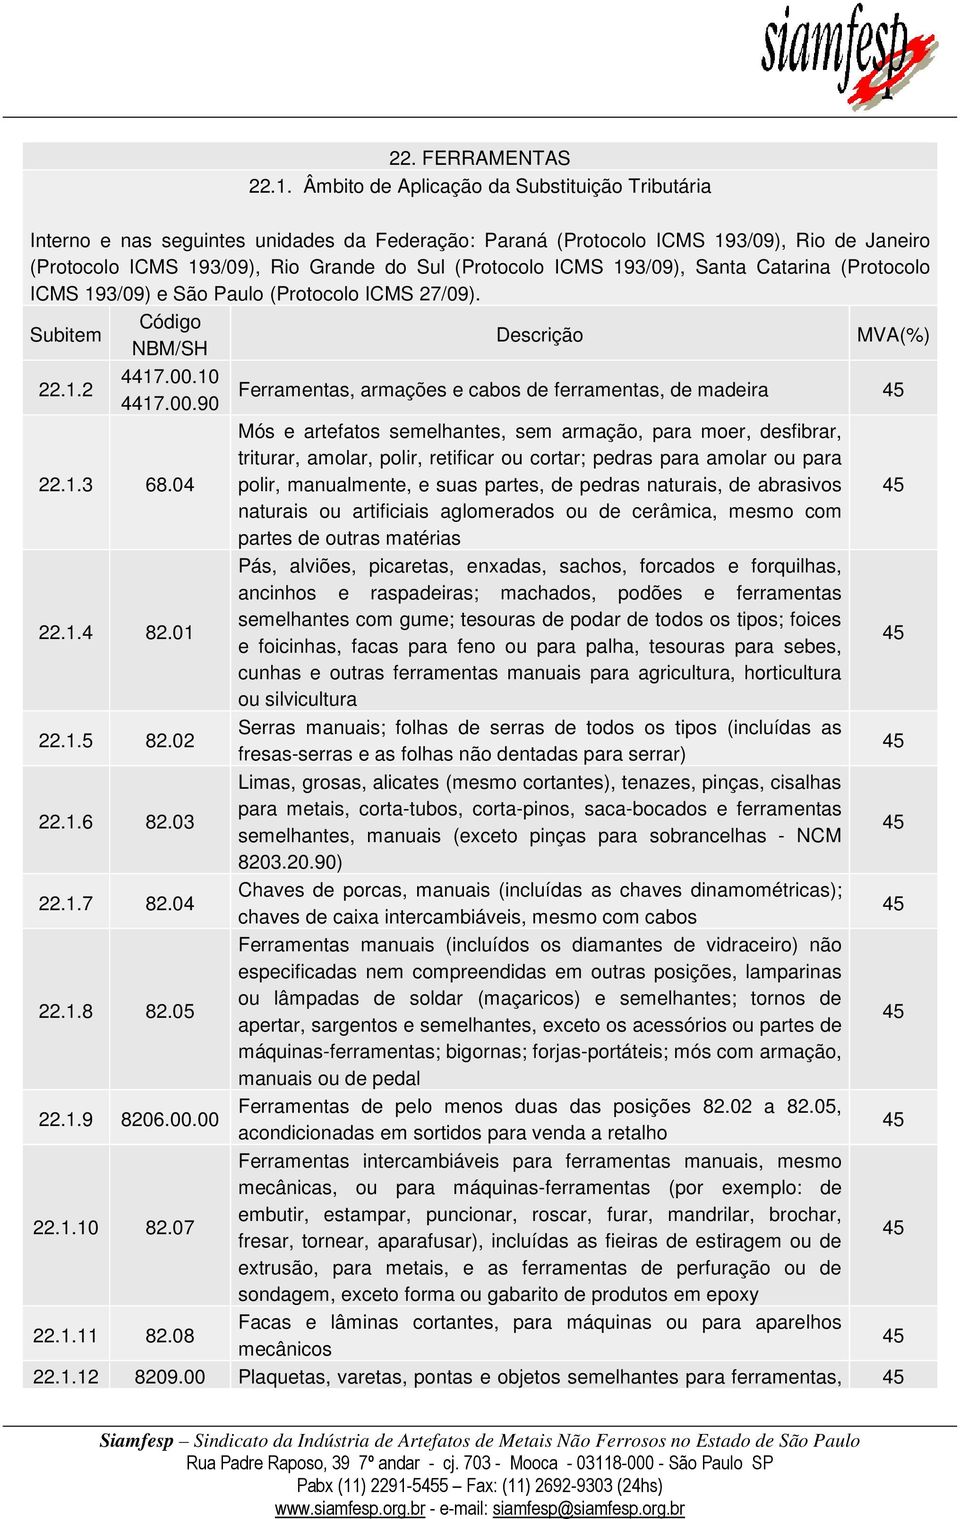 193/09), Santa Catarina (Protocolo ICMS 193/09) e São Paulo (Protocolo ICMS 27/09). 22.1.2 4417.00.10 4417.00.90 Ferramentas, armações e cabos de ferramentas, de madeira 22.1.3 68.